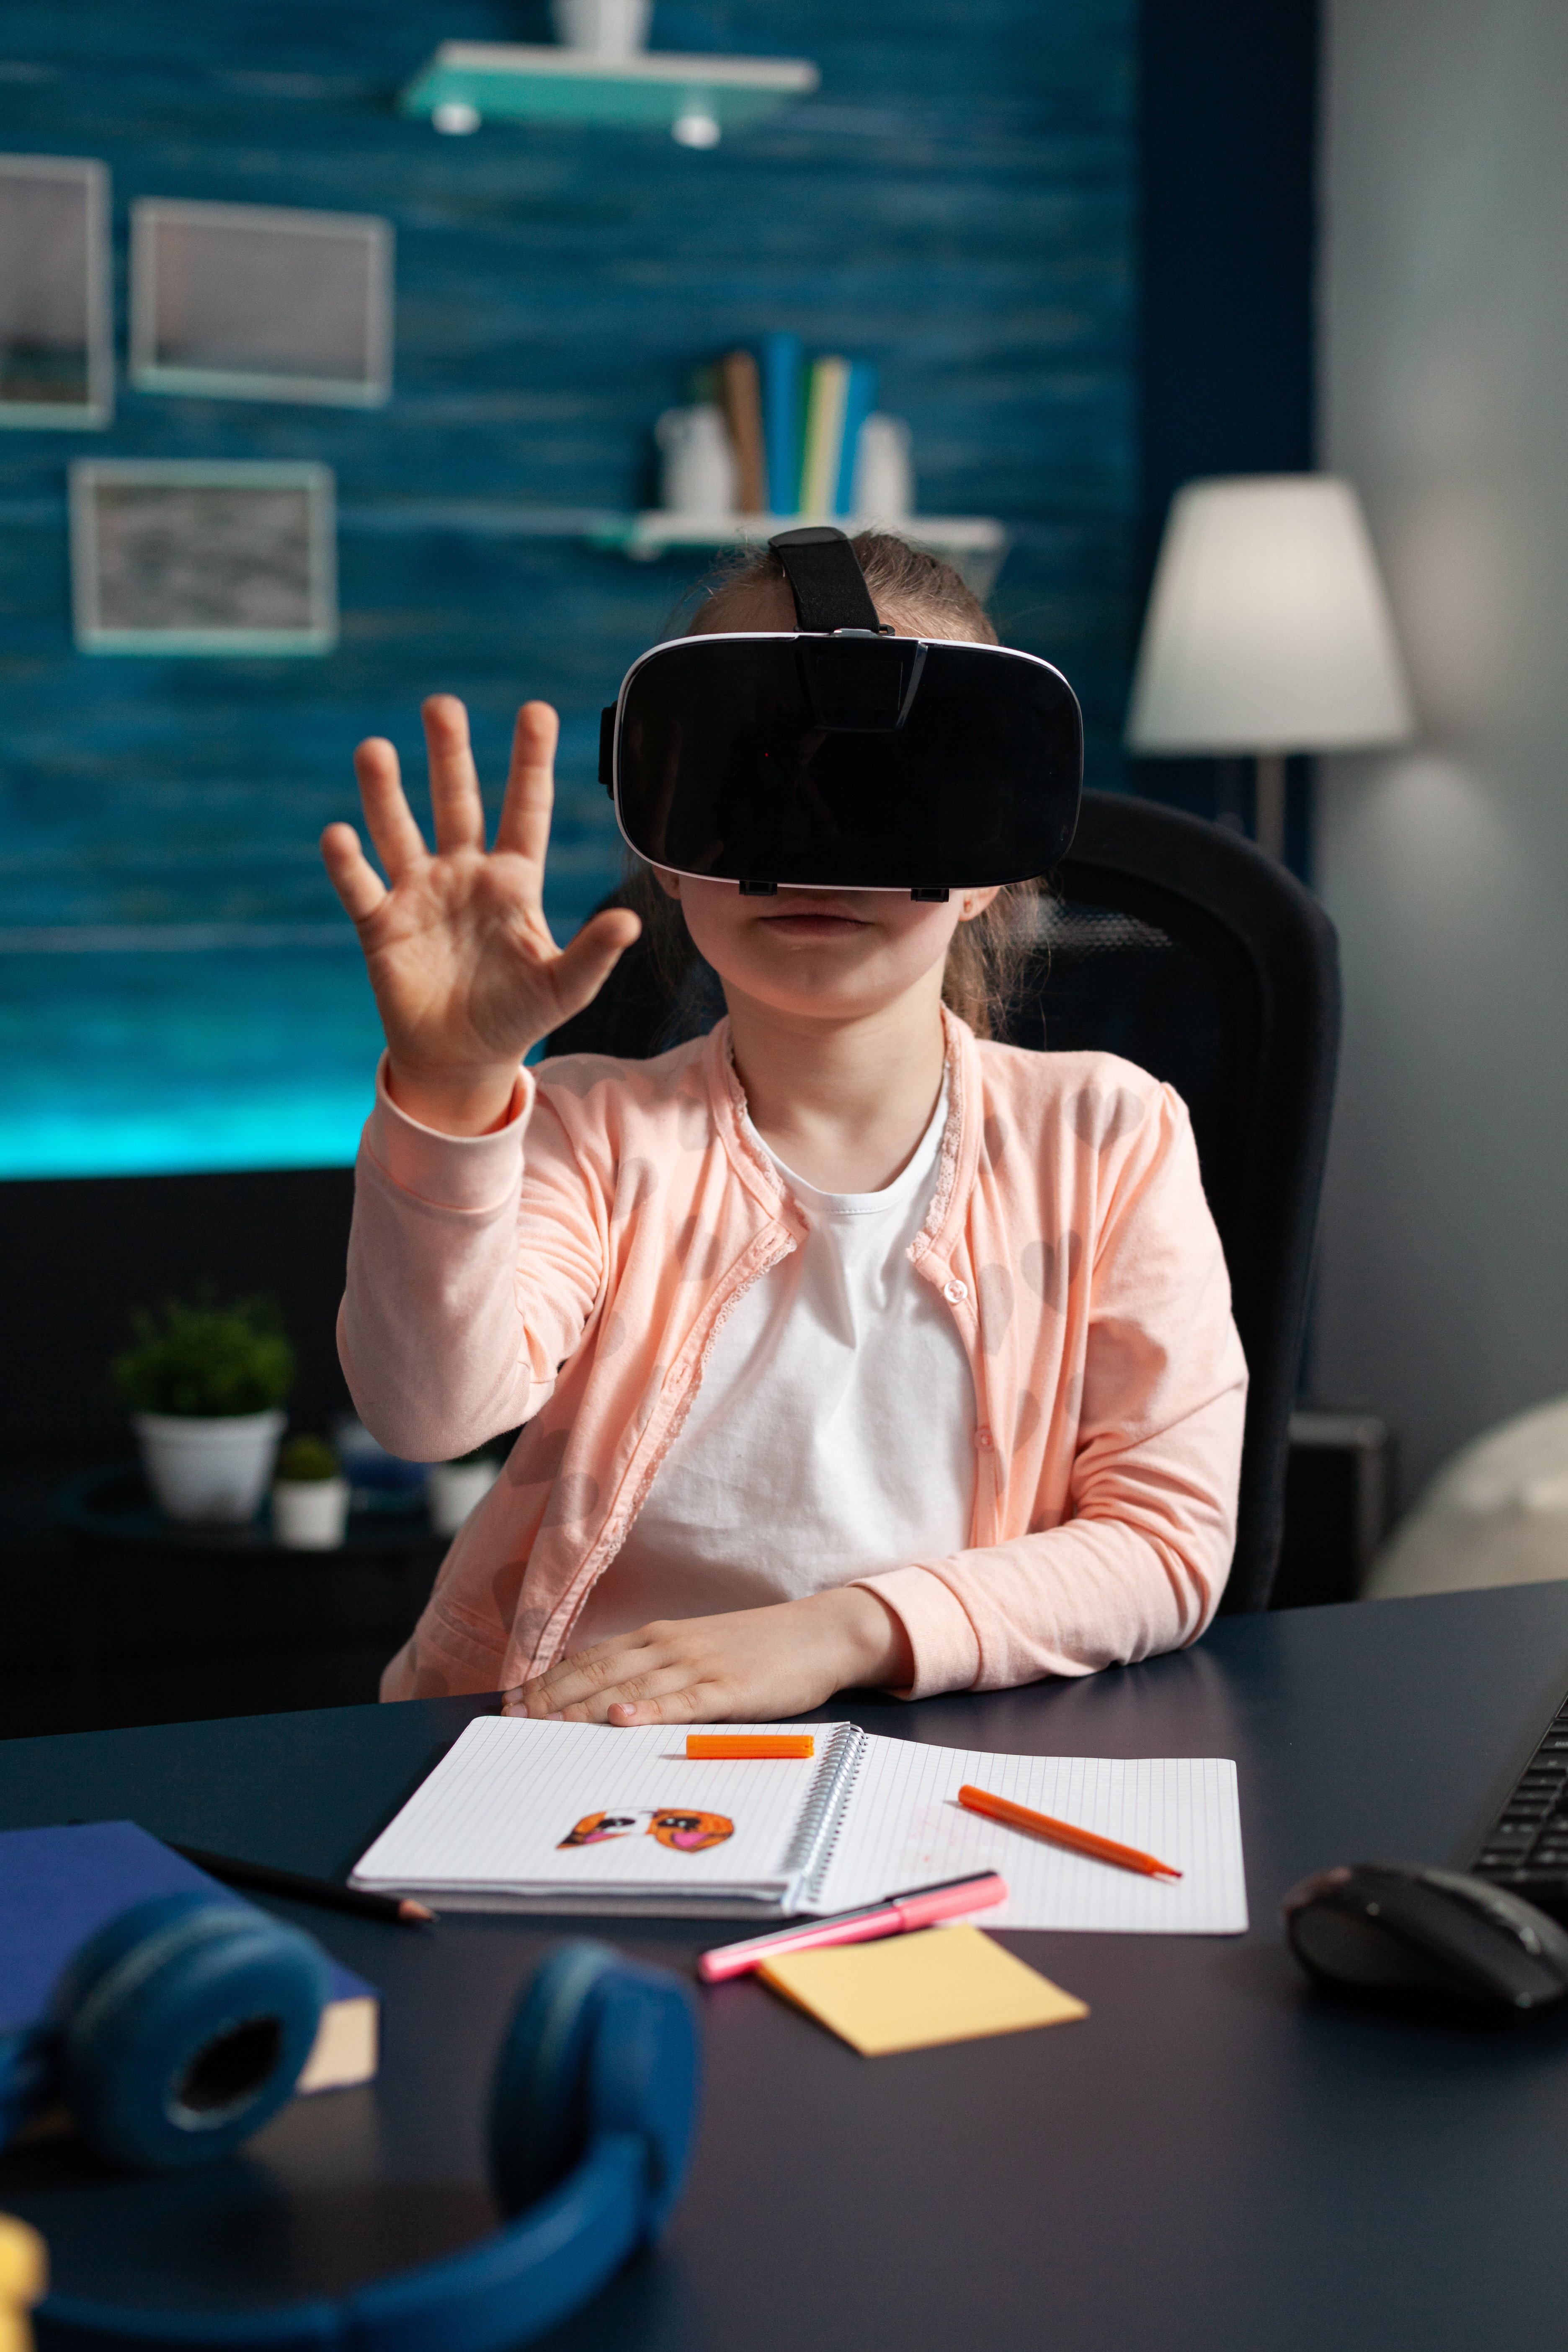 Le futur de l'apprentissage: la réalité virtuelle comme modalité clé